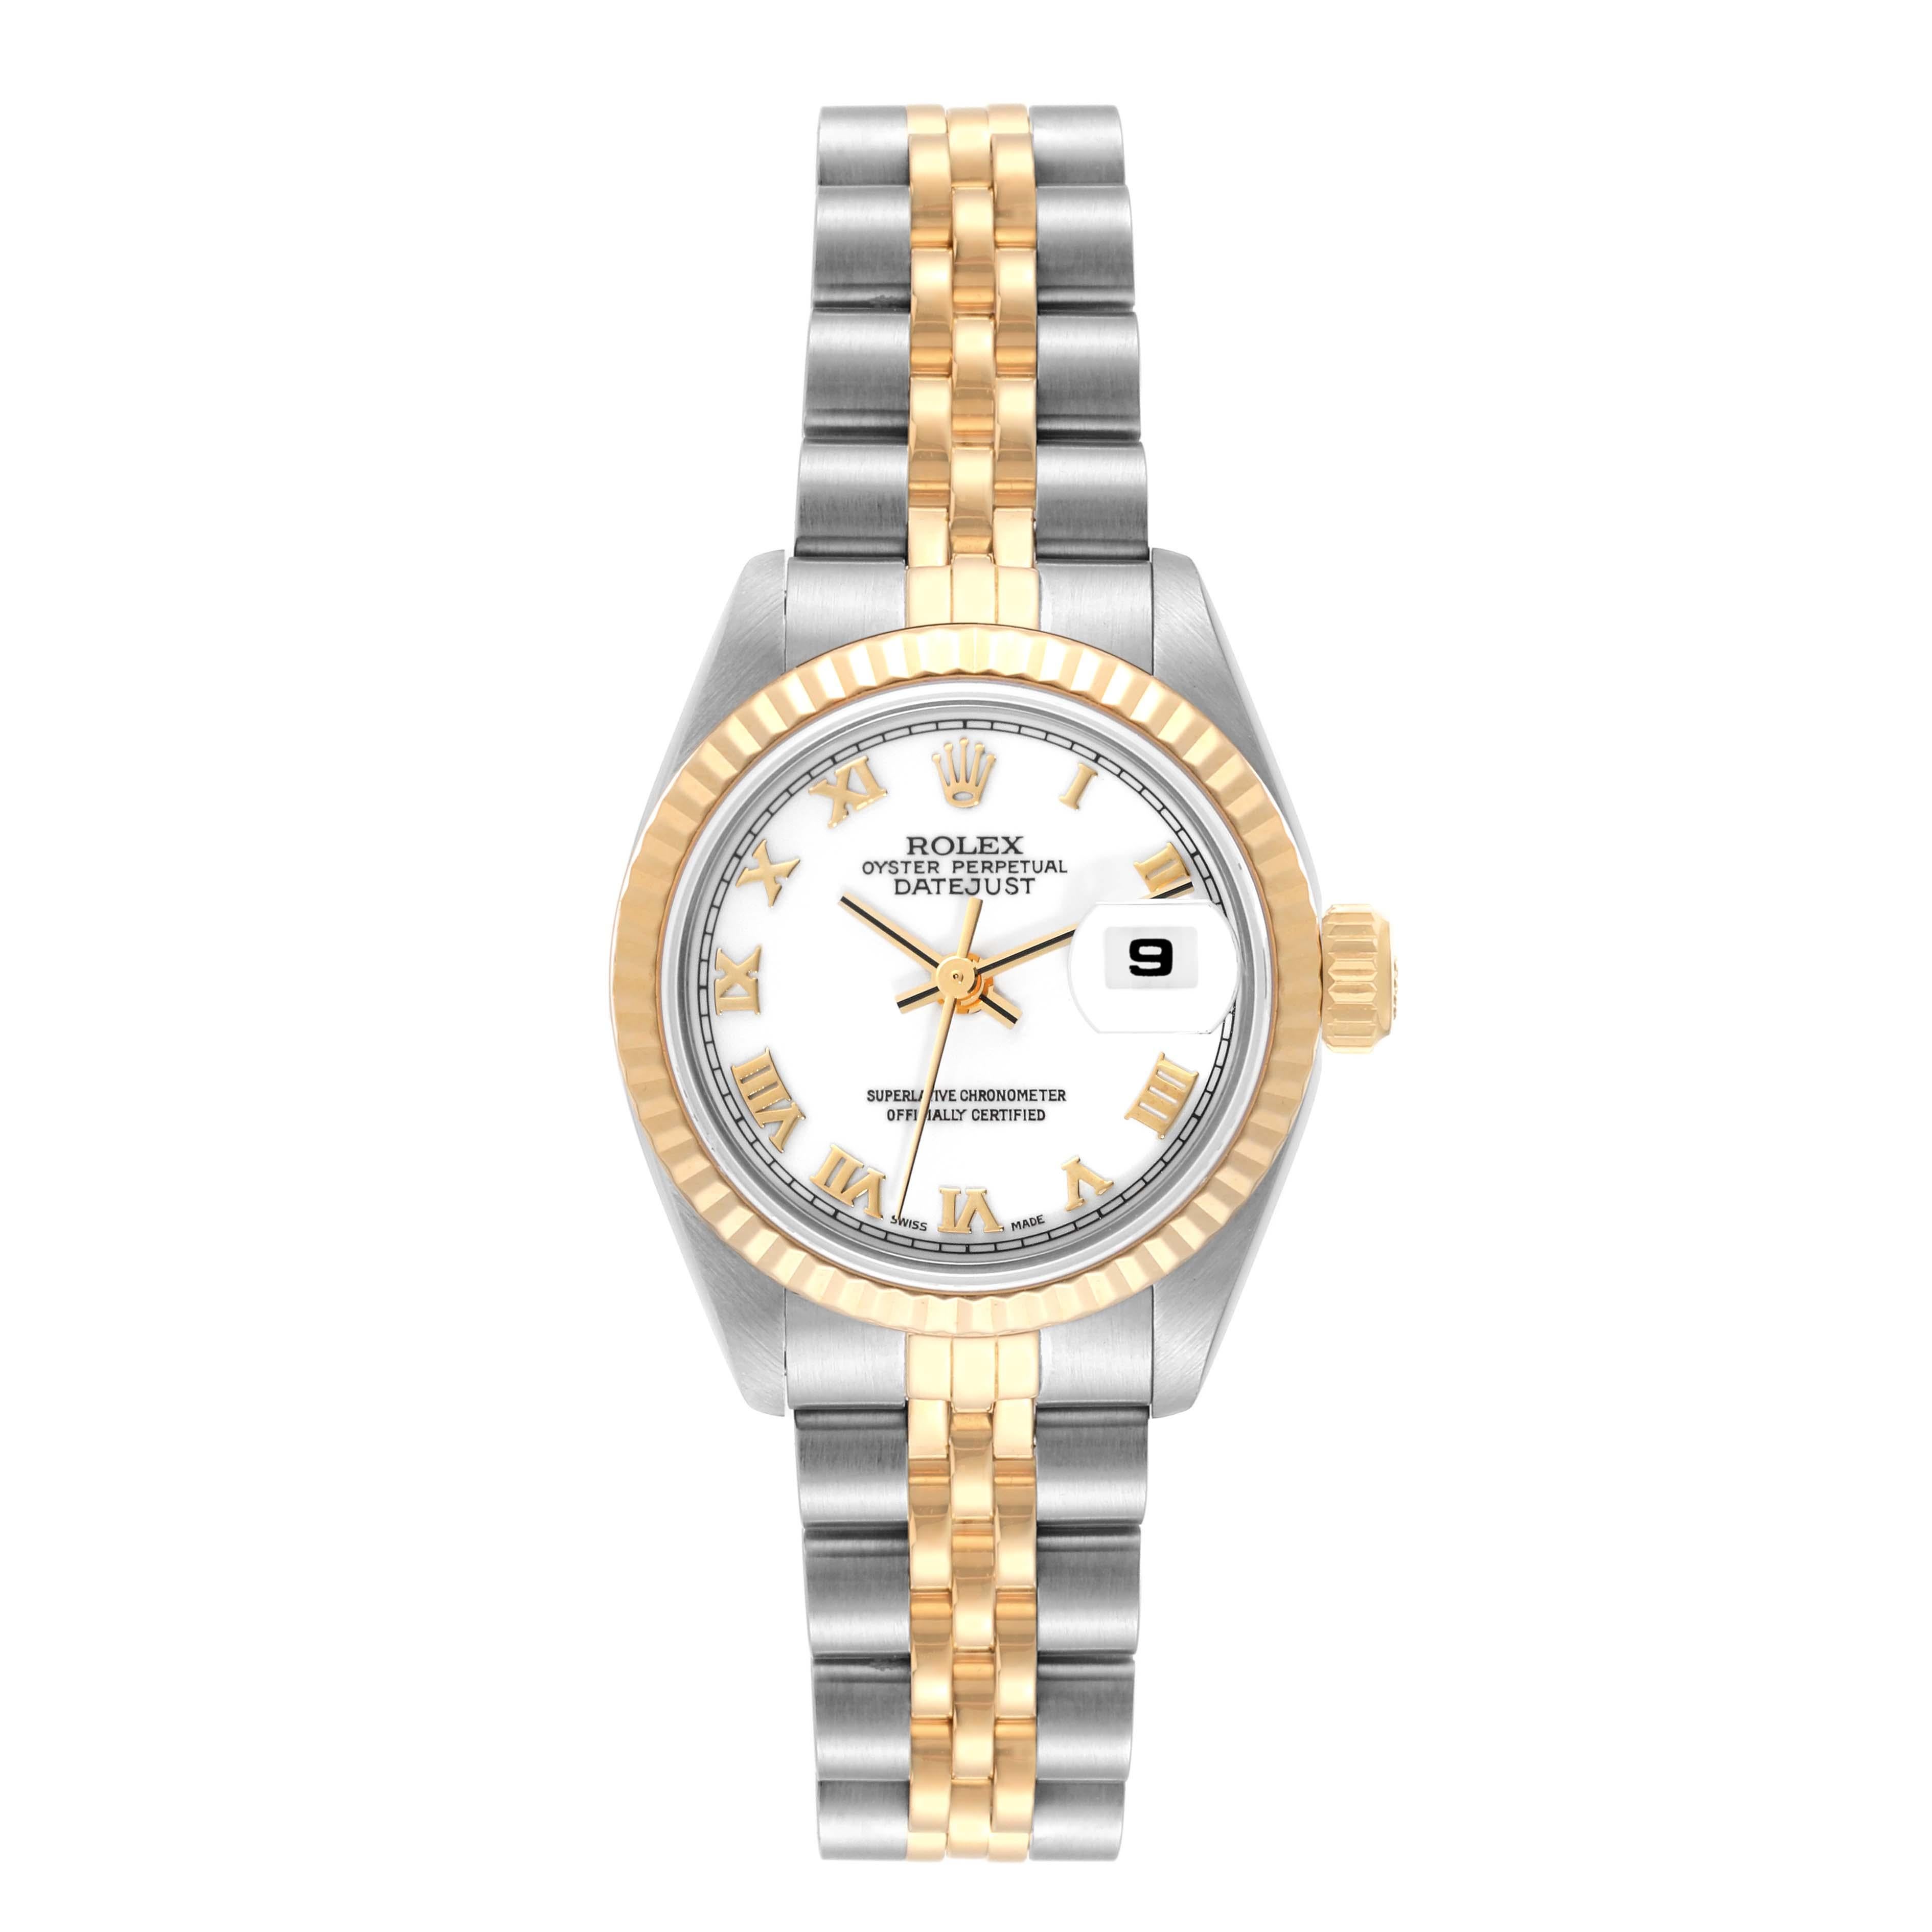 Rolex Datejust Weißes Zifferblatt Stahl Gelbgold Damenuhr 69173. Offiziell zertifiziertes Chronometerwerk mit automatischem Aufzug. Austerngehäuse aus Edelstahl mit einem Durchmesser von 26.0 mm. Rolex Logo auf der Krone. Geriffelte Lünette aus 18